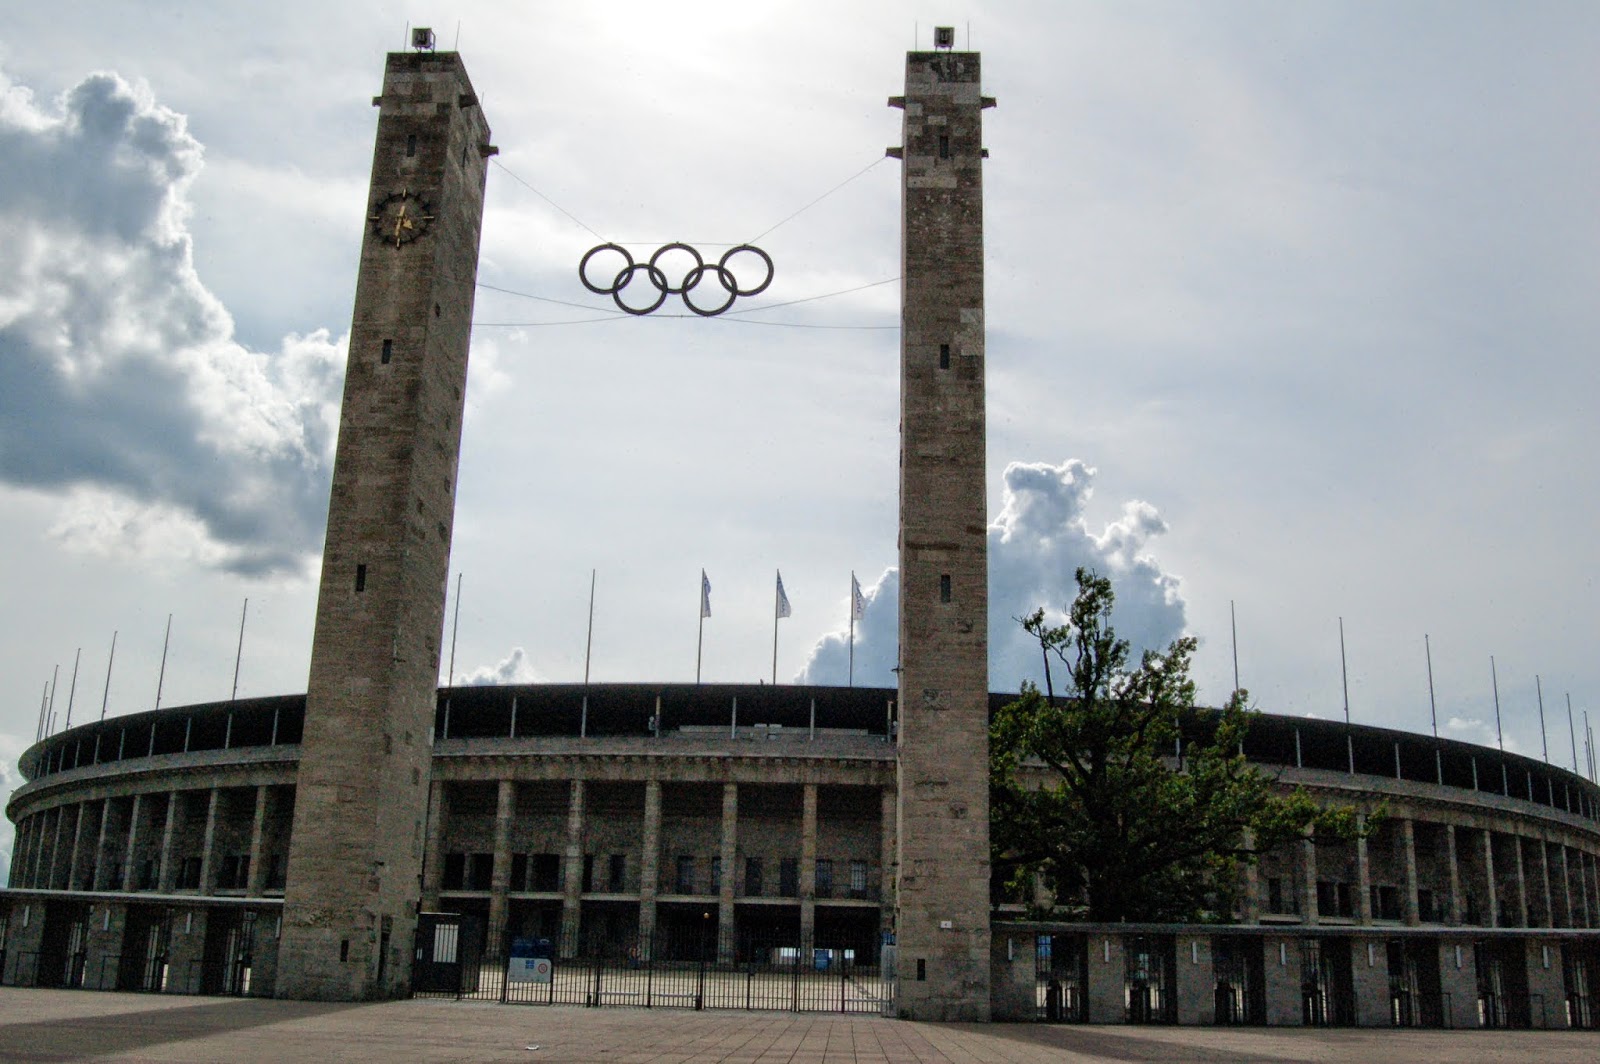 Stadion olimpijski w Berlinie, widok z zewnątrz